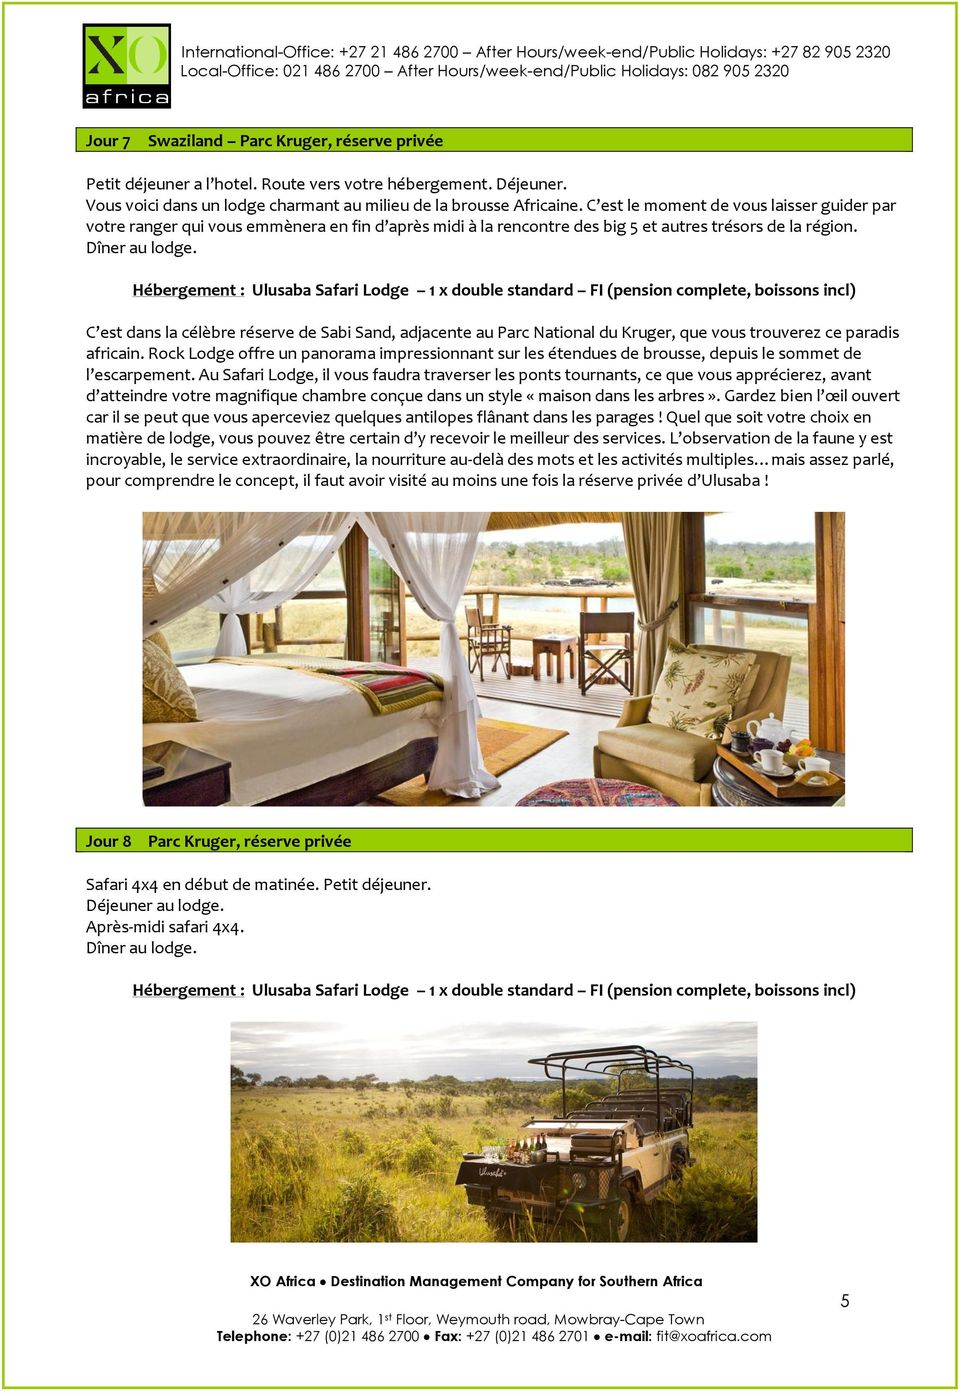 Hébergement : Ulusaba Safari Lodge 1 x double standard FI (pension complete, boissons incl) C est dans la célèbre réserve de Sabi Sand, adjacente au Parc National du Kruger, que vous trouverez ce